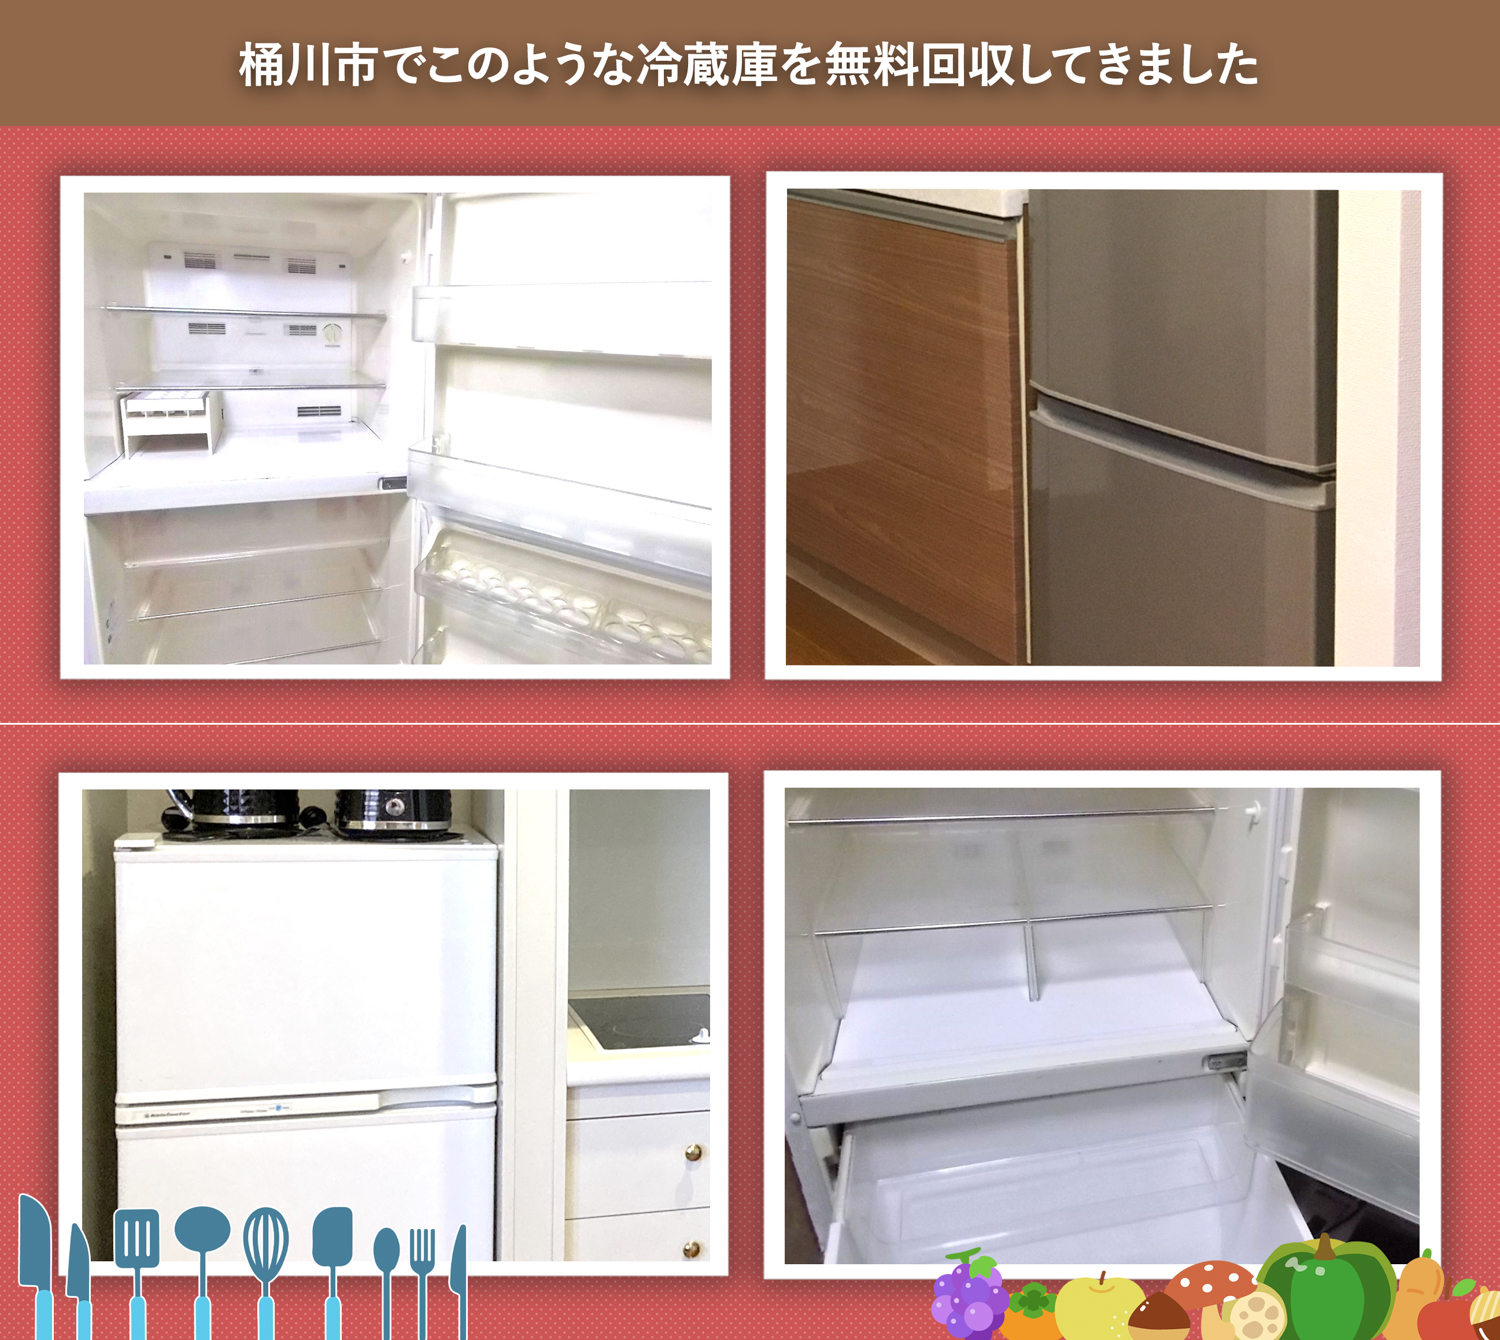 桶川市でこのような冷蔵庫を無料回収してきました。